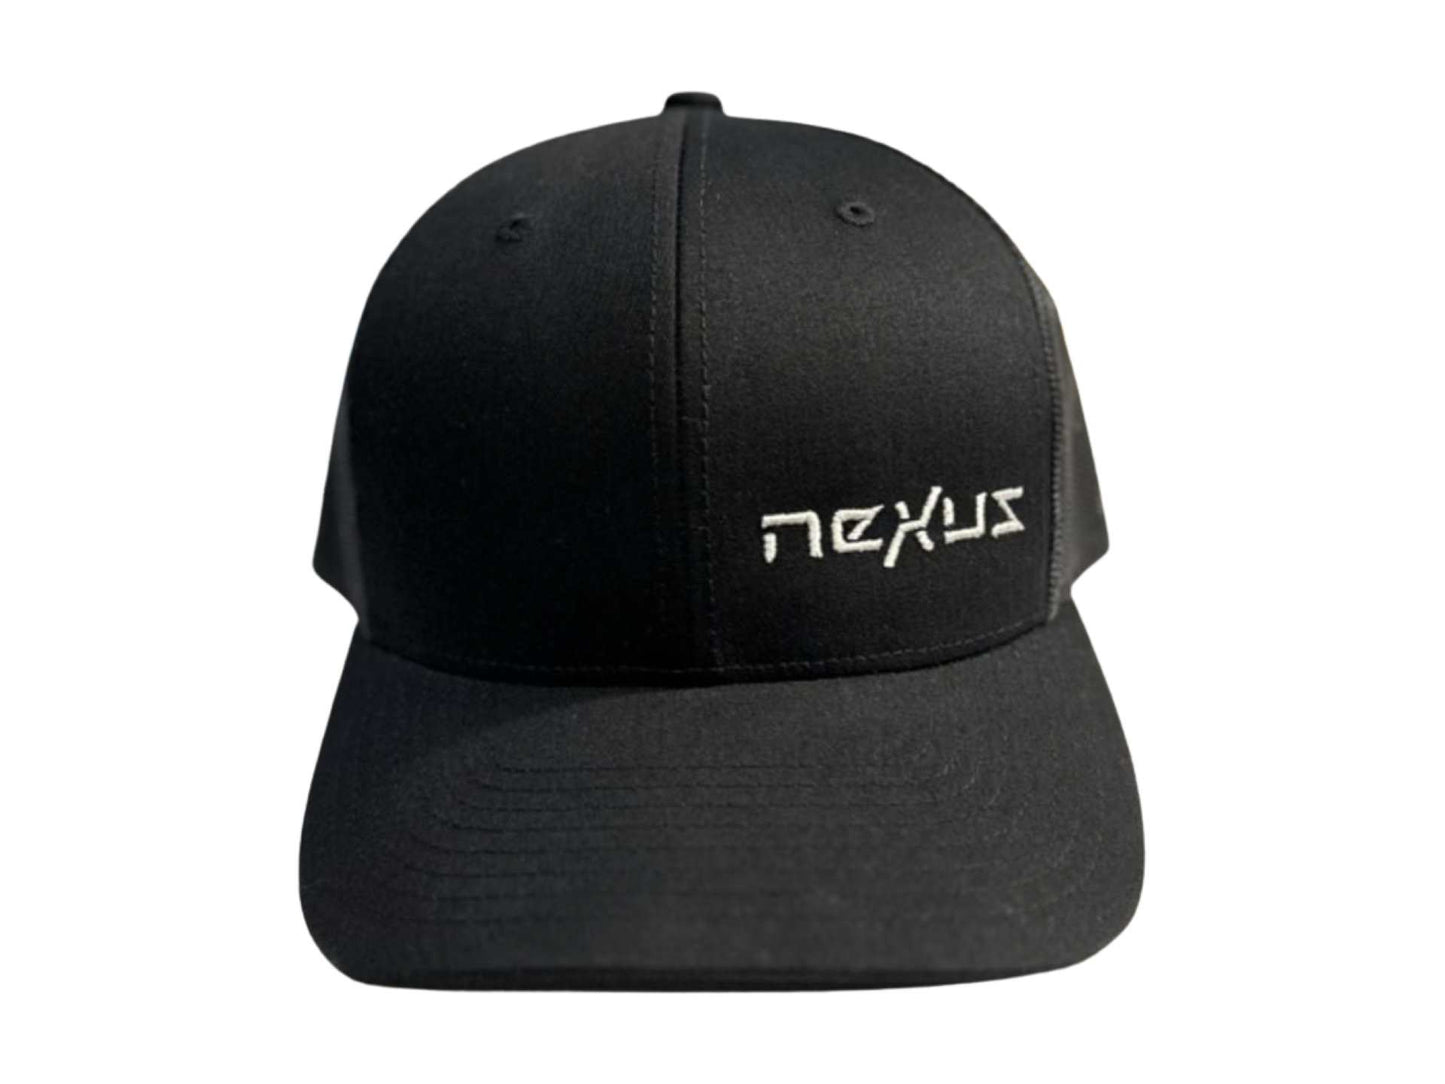 Nexus Trucker Hat